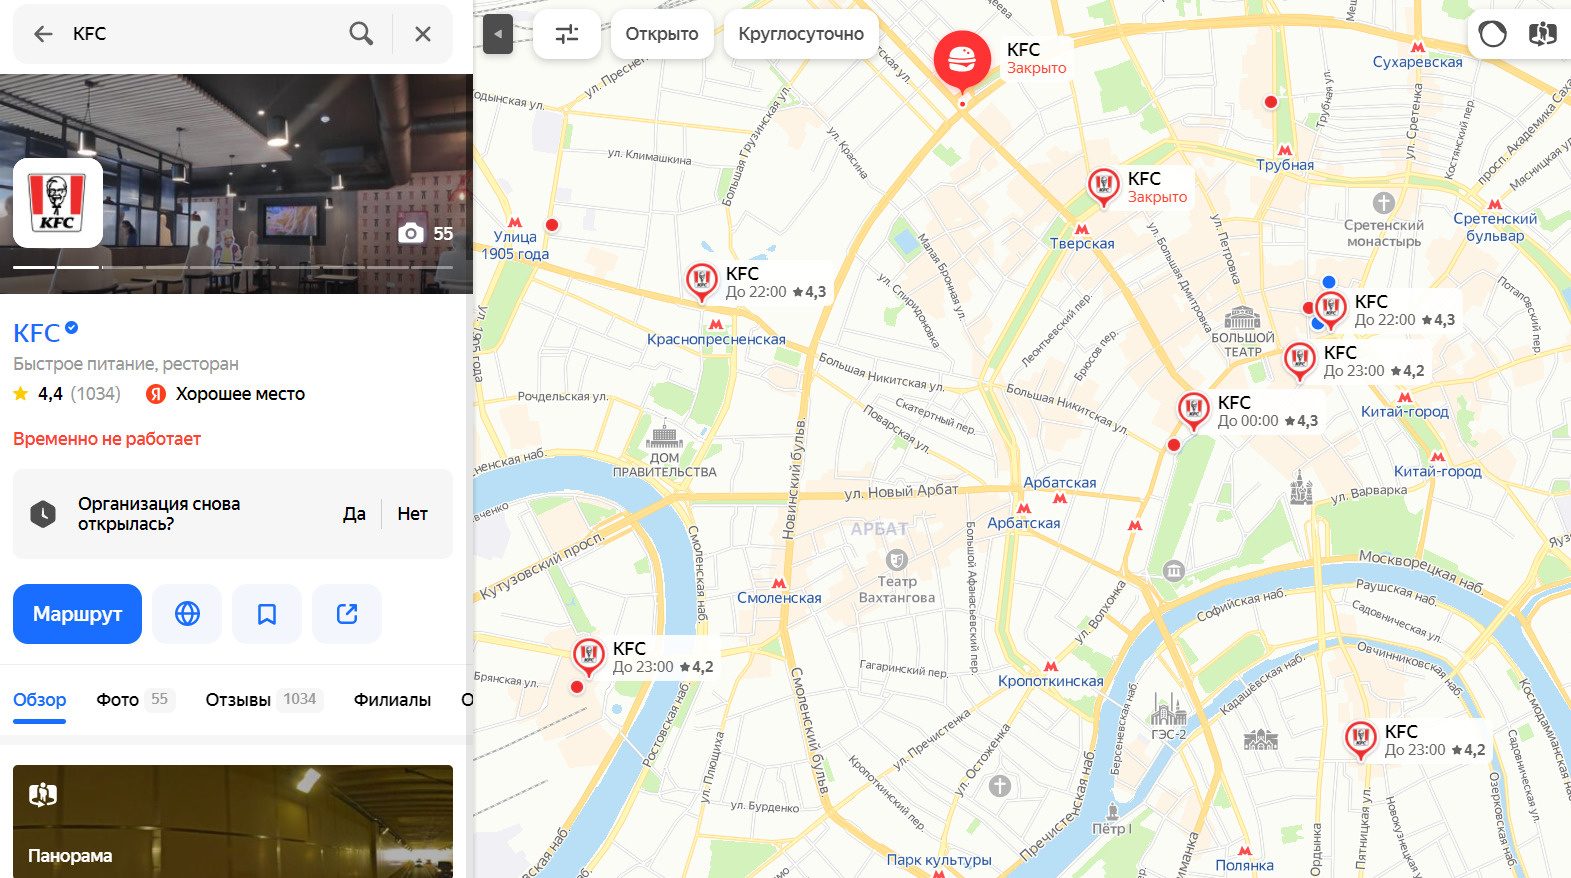 «Яндекс.Карты» показывают, какие точки KFC доступны, а какие точно не будут работать в ближайшее время